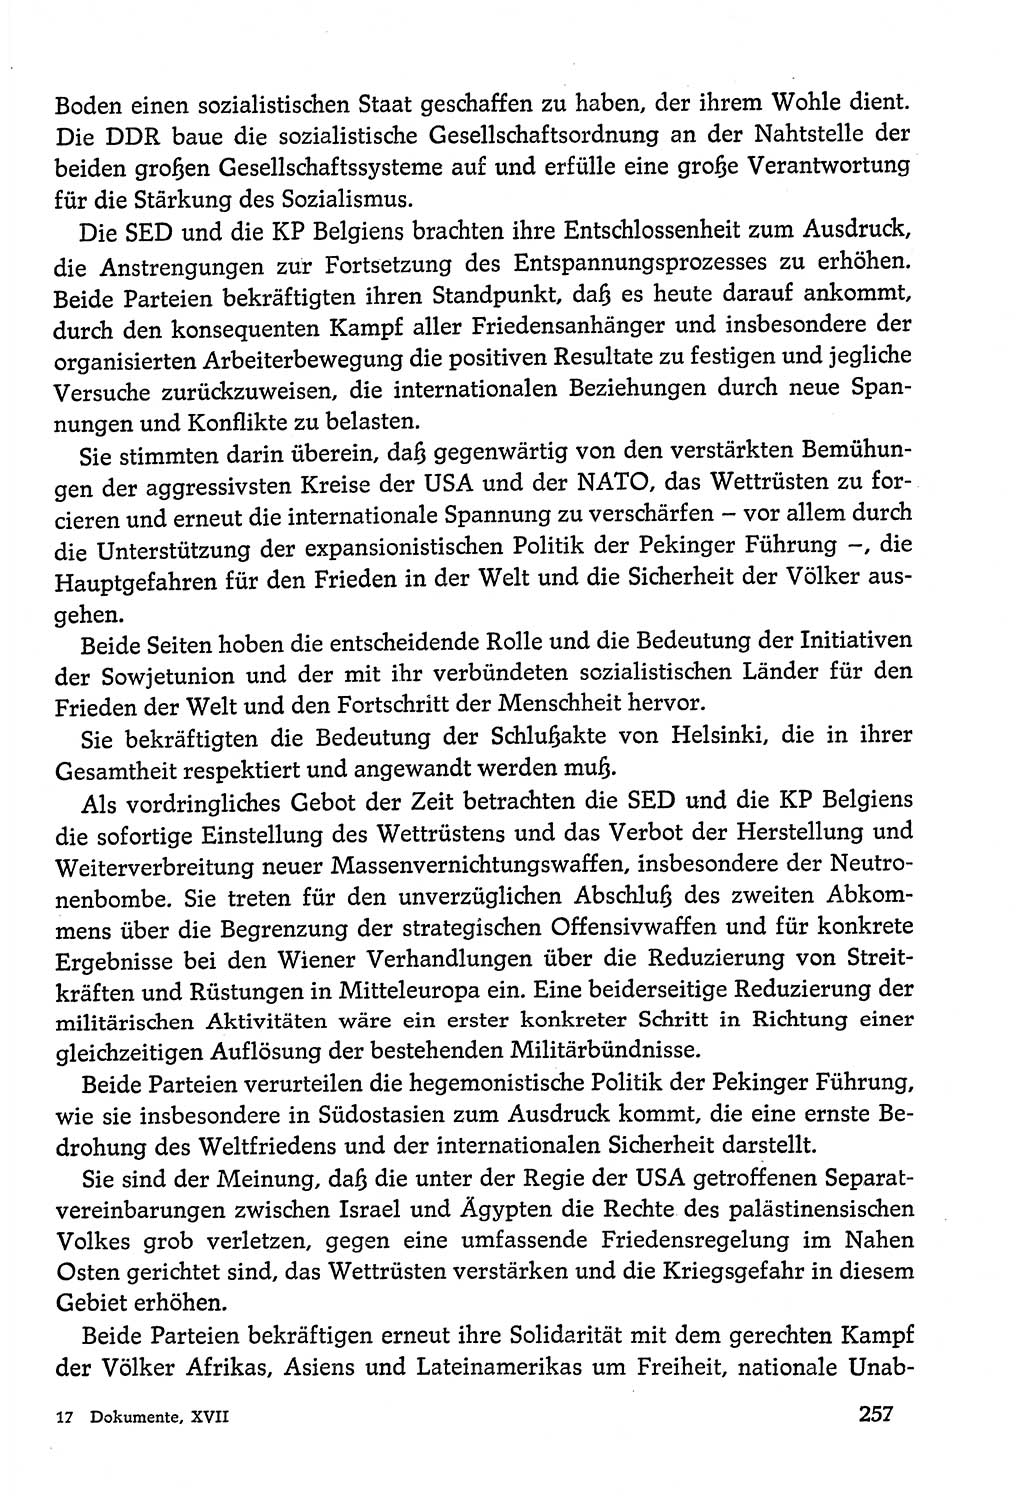 Dokumente der Sozialistischen Einheitspartei Deutschlands (SED) [Deutsche Demokratische Republik (DDR)] 1978-1979, Seite 257 (Dok. SED DDR 1978-1979, S. 257)